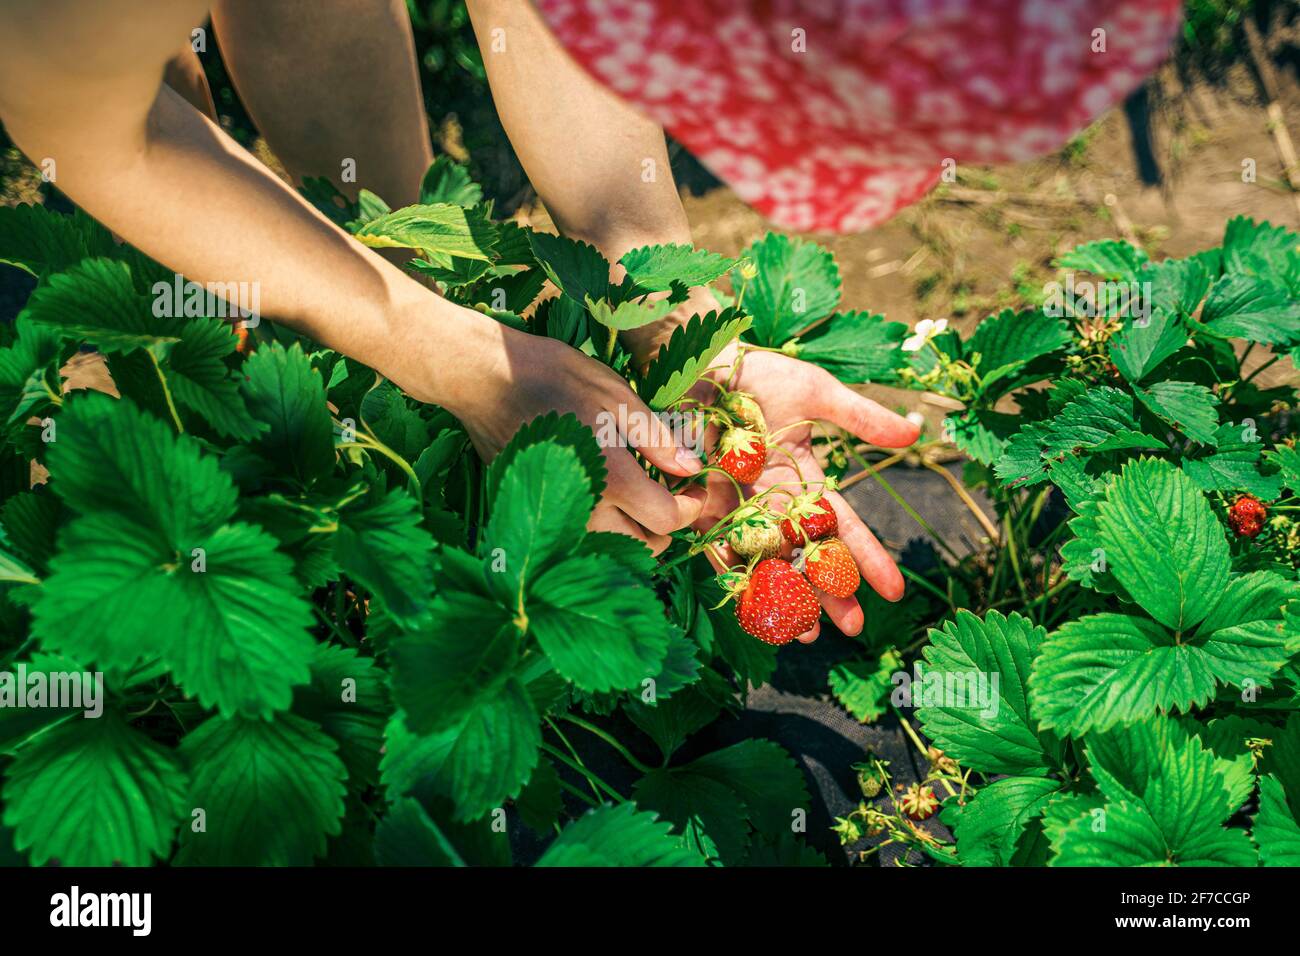 Une jeune femme paysanne au chapeau rouge récolte des fraises mûres. Récolte de fraises fraîches biologiques. Les mains des fermiers cueillant des fraises Banque D'Images